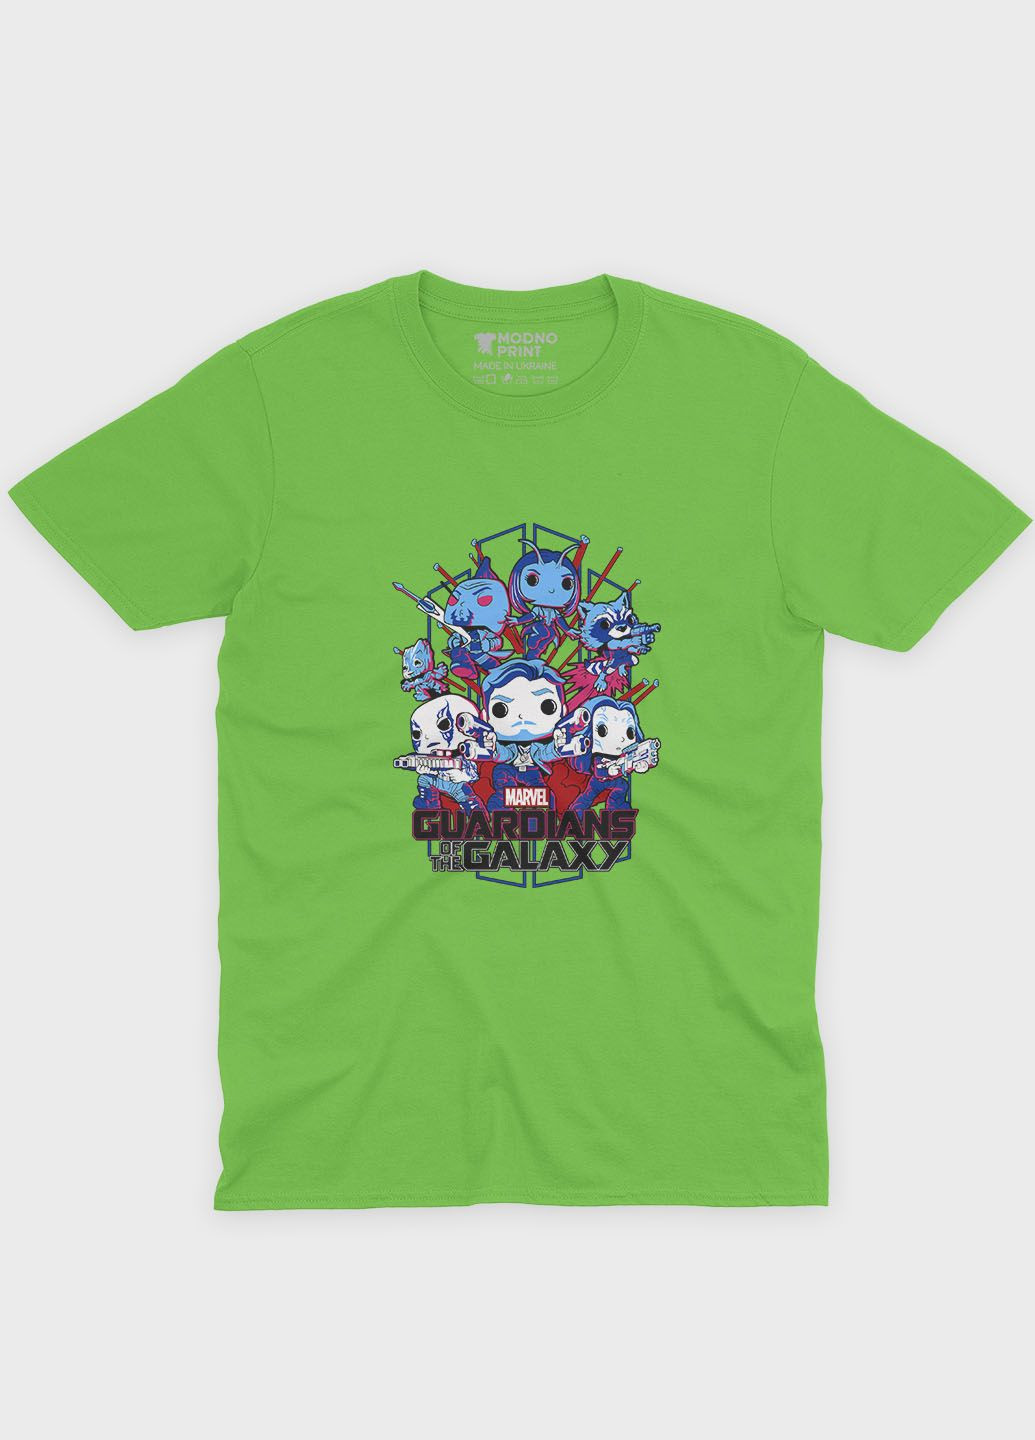 Салатовая демисезонная футболка для мальчика с принтом супергероев - часовые галактики (ts001-1-kiw-006-017-002-b) Modno